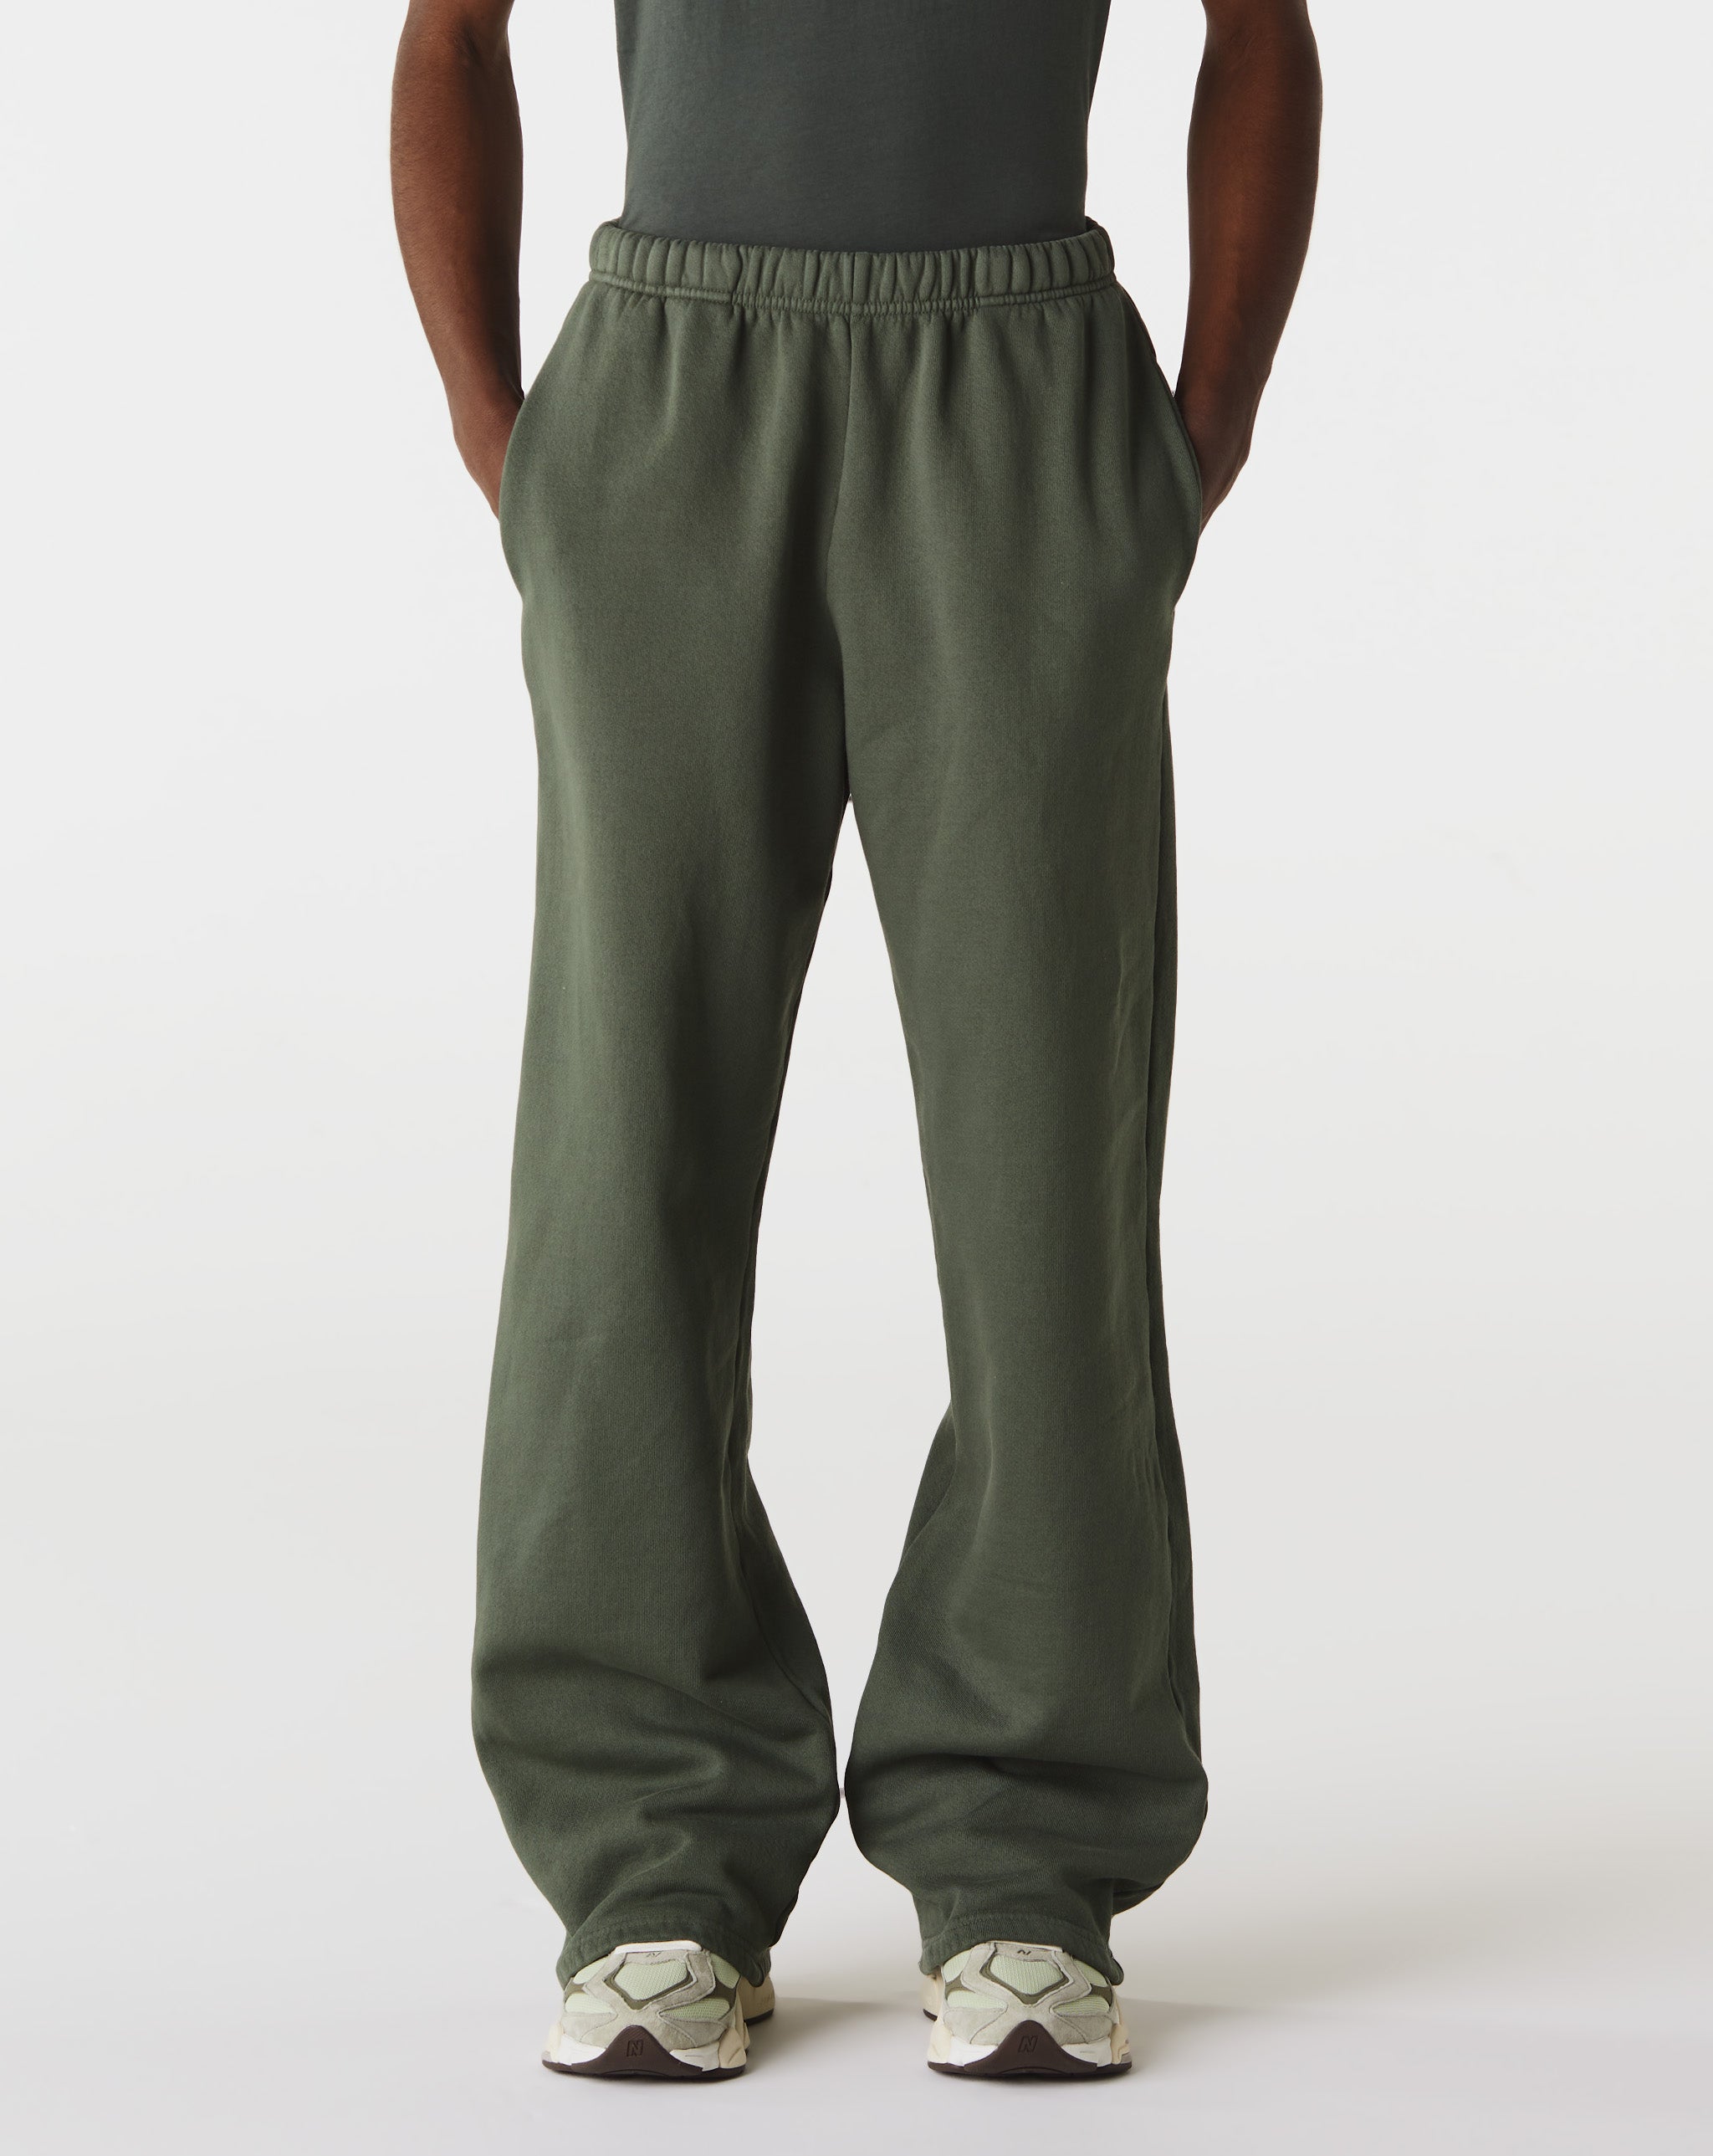 Les Tien Puddle Shorts Pants  - Cheap Urlfreeze Jordan outlet